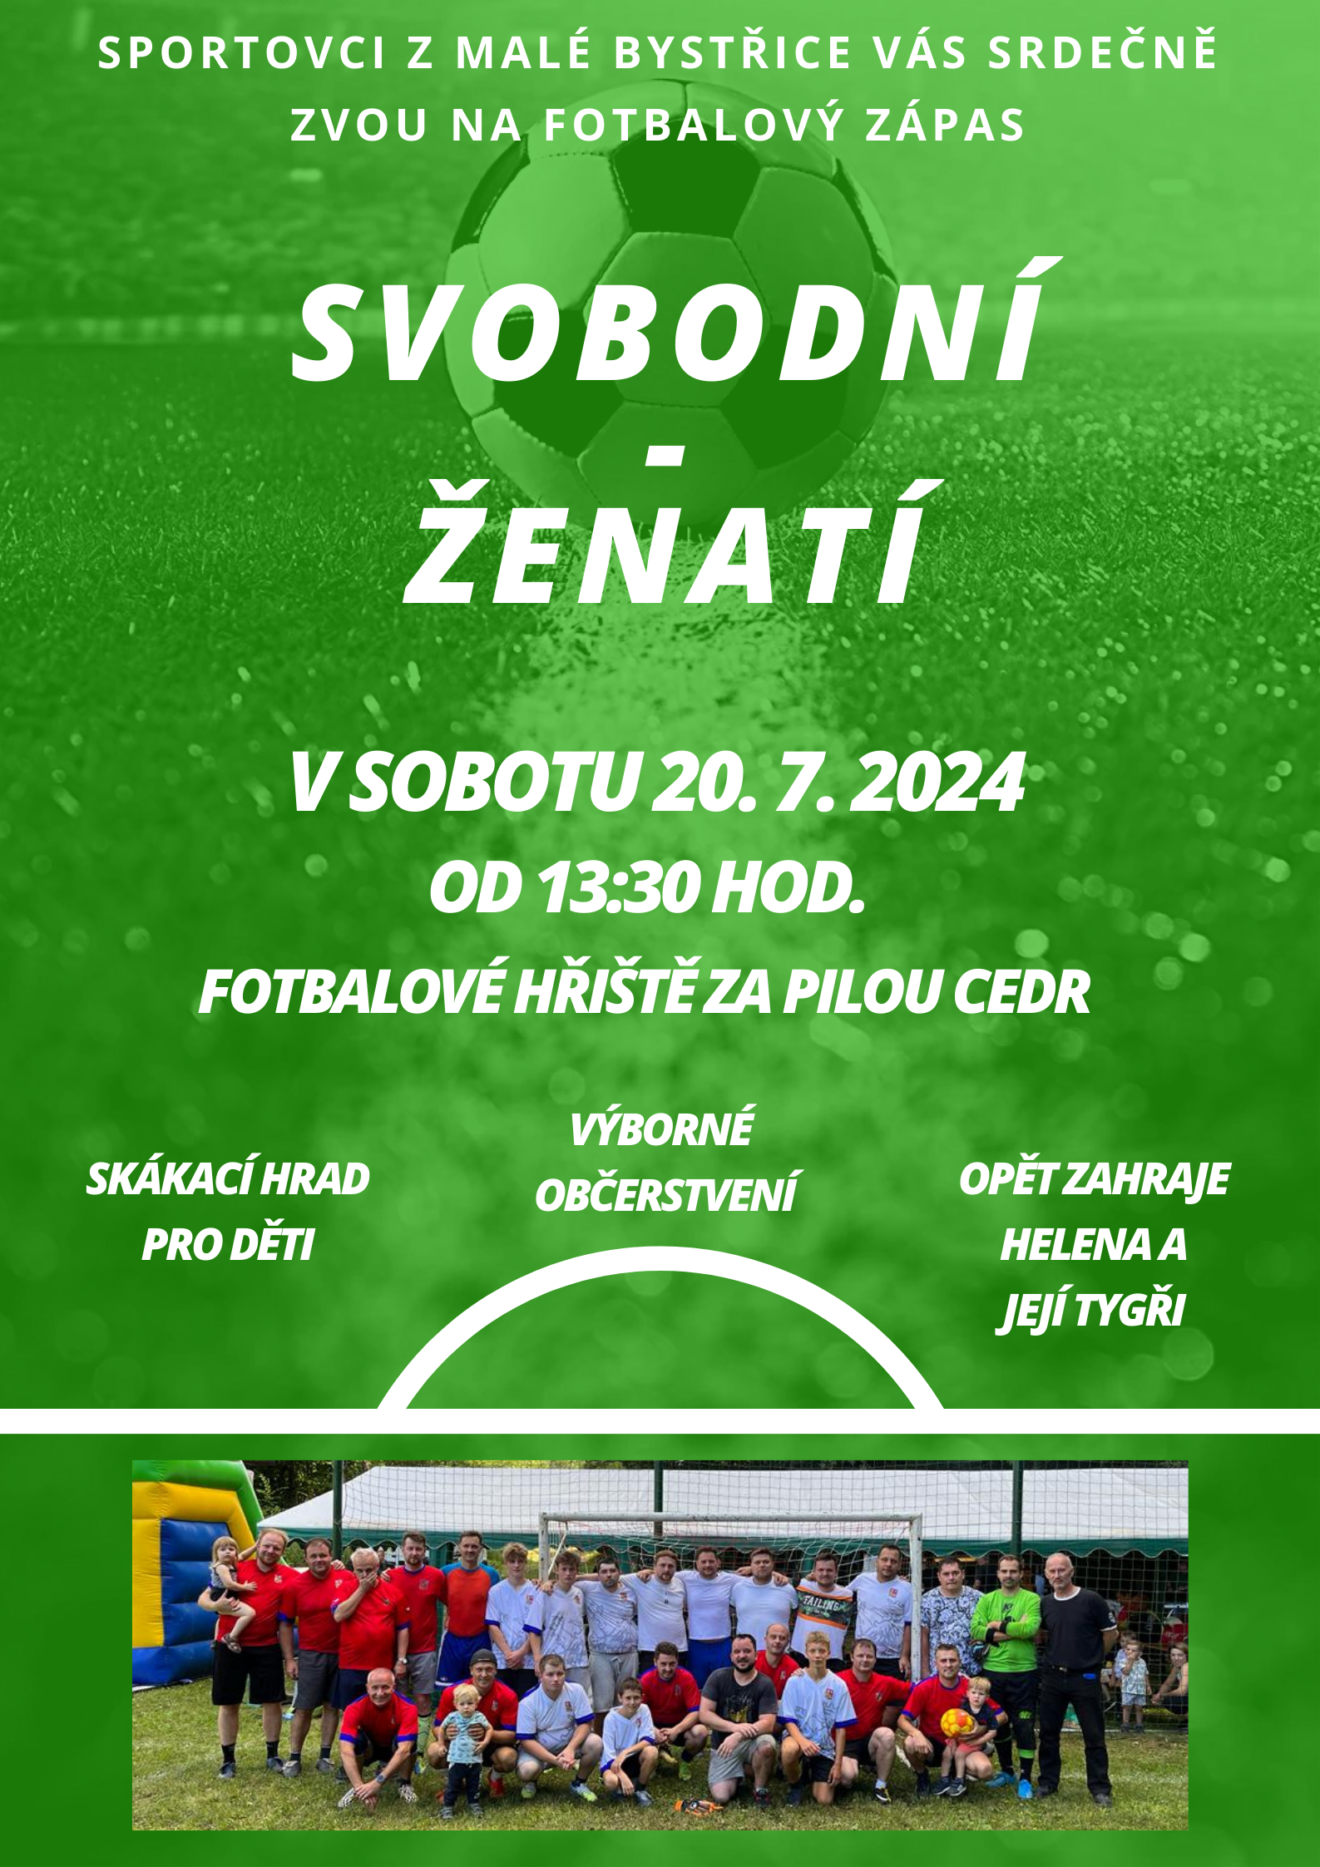 Pozvánka na fotbalové utkání svobodných proti ženatým v sobotu 20. 7. 2024